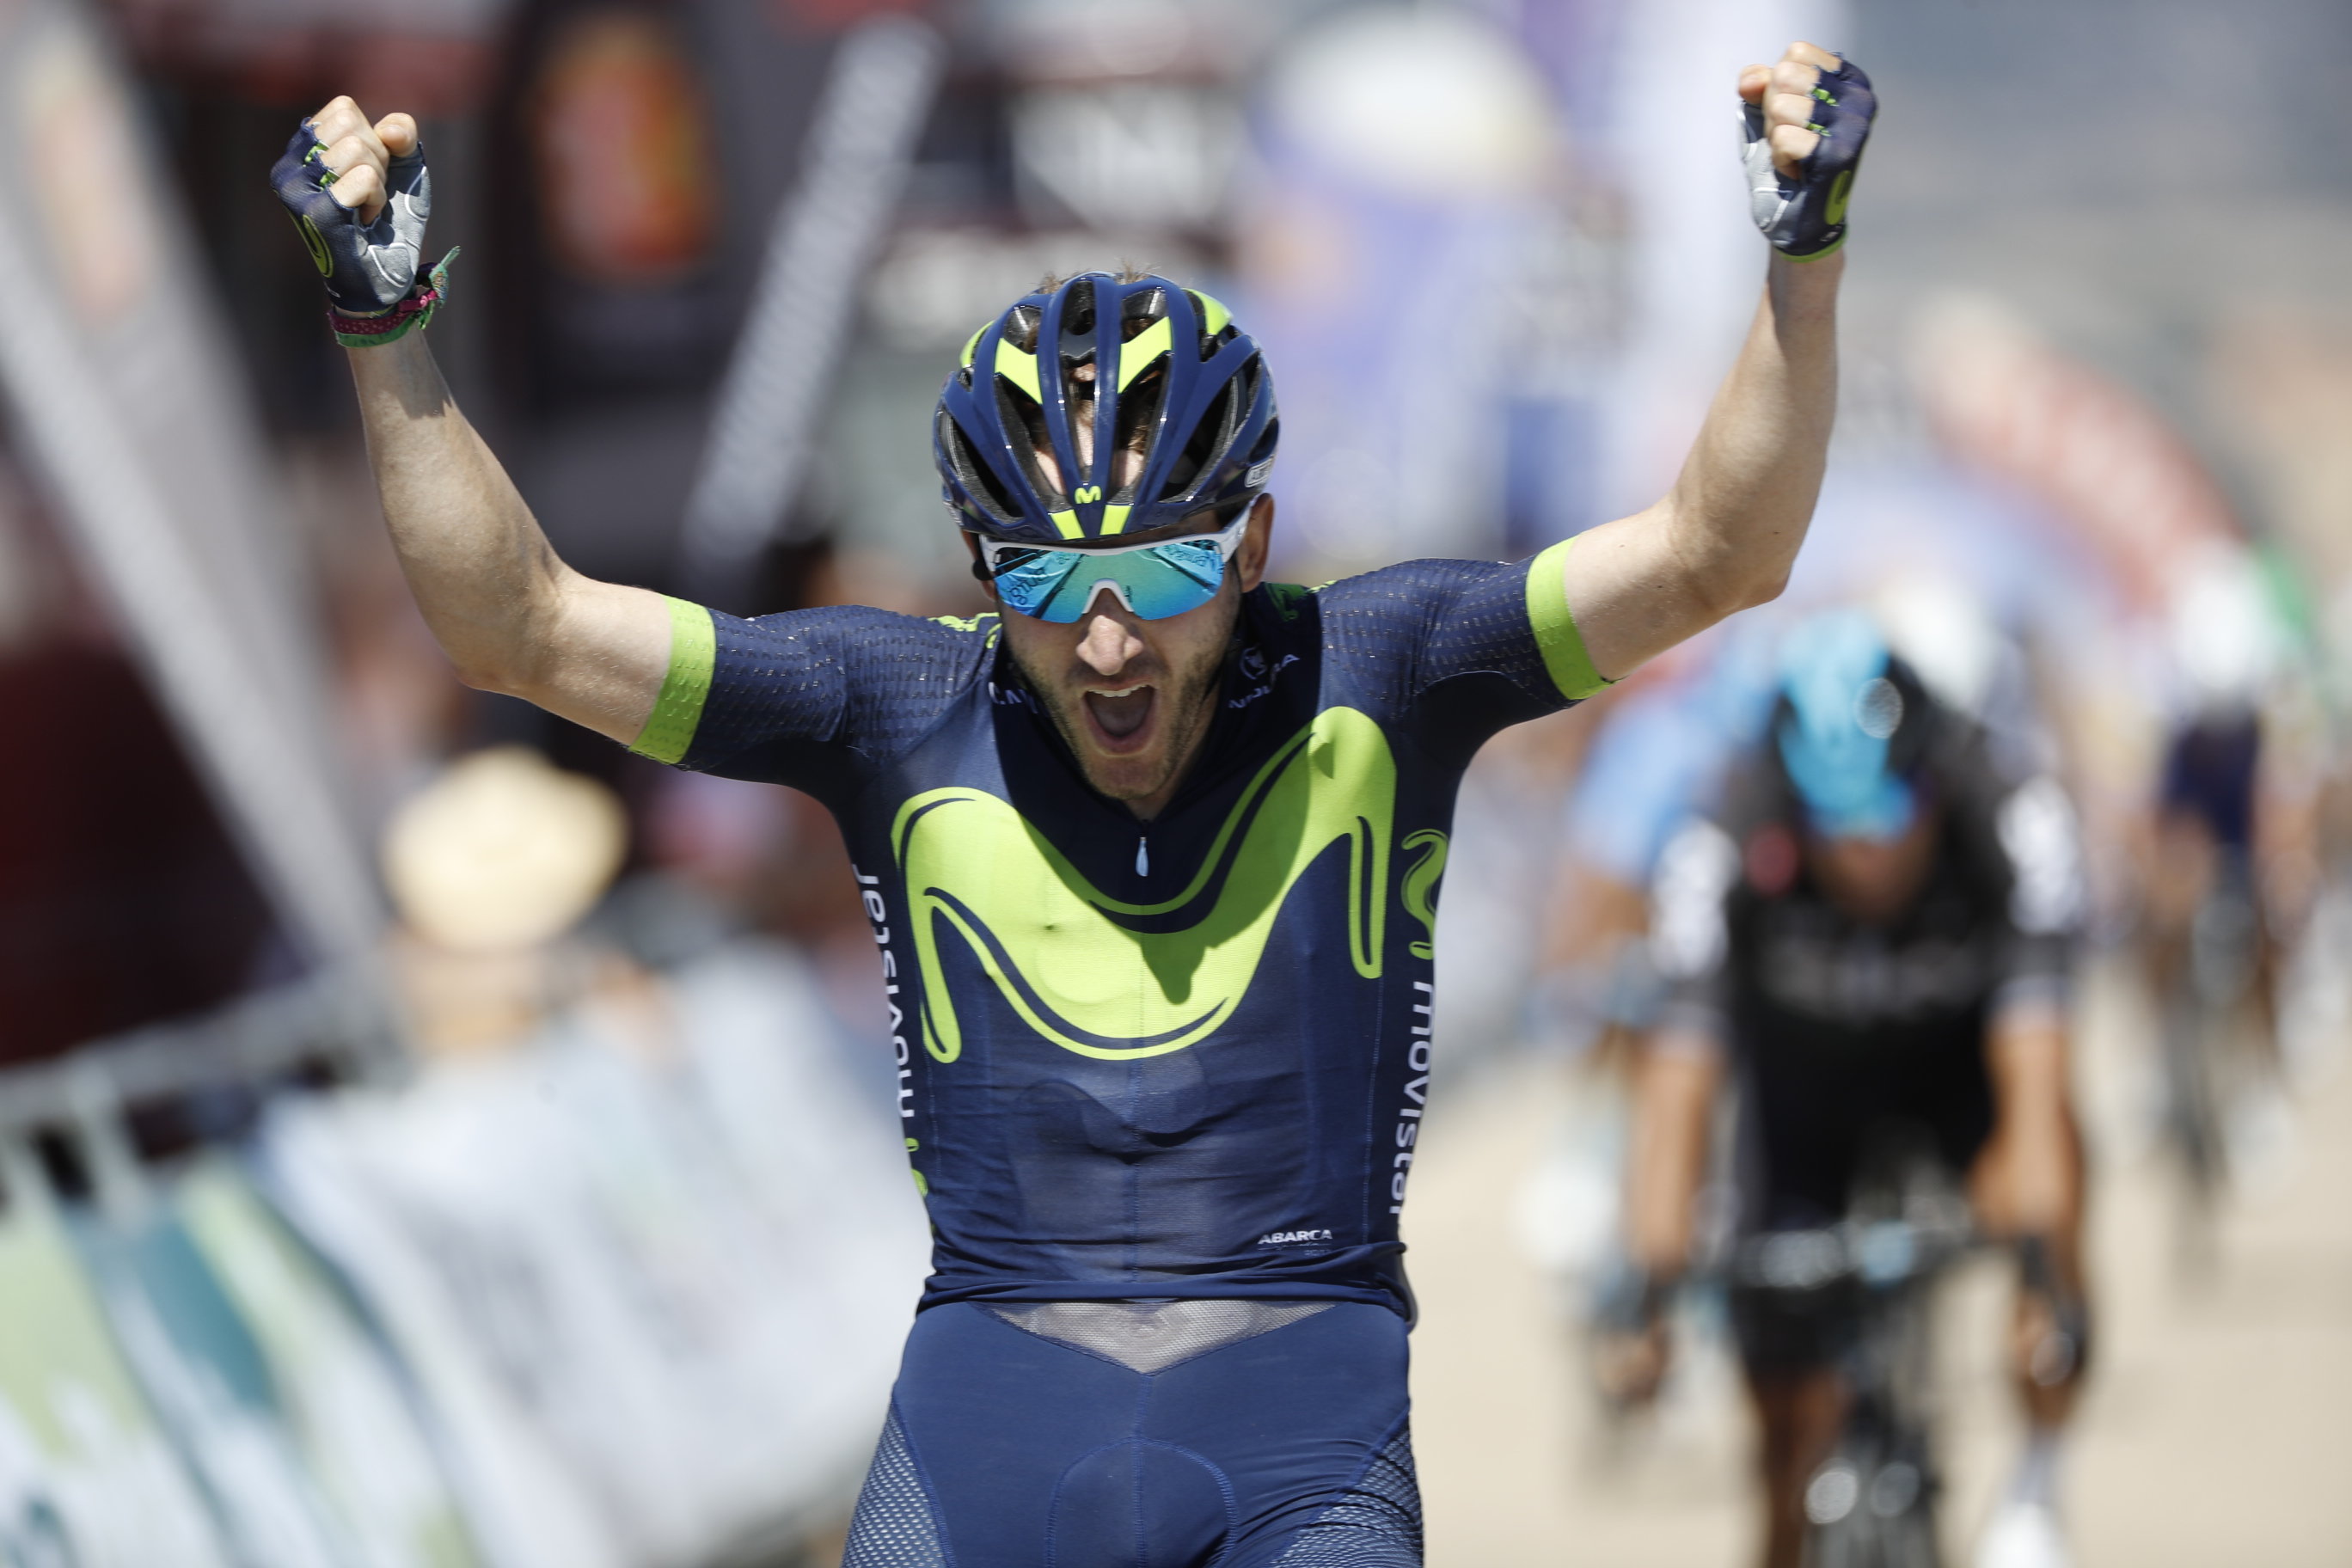 Carlos Barbero vince la quarta tappa della Vuelta a Burgos 2017